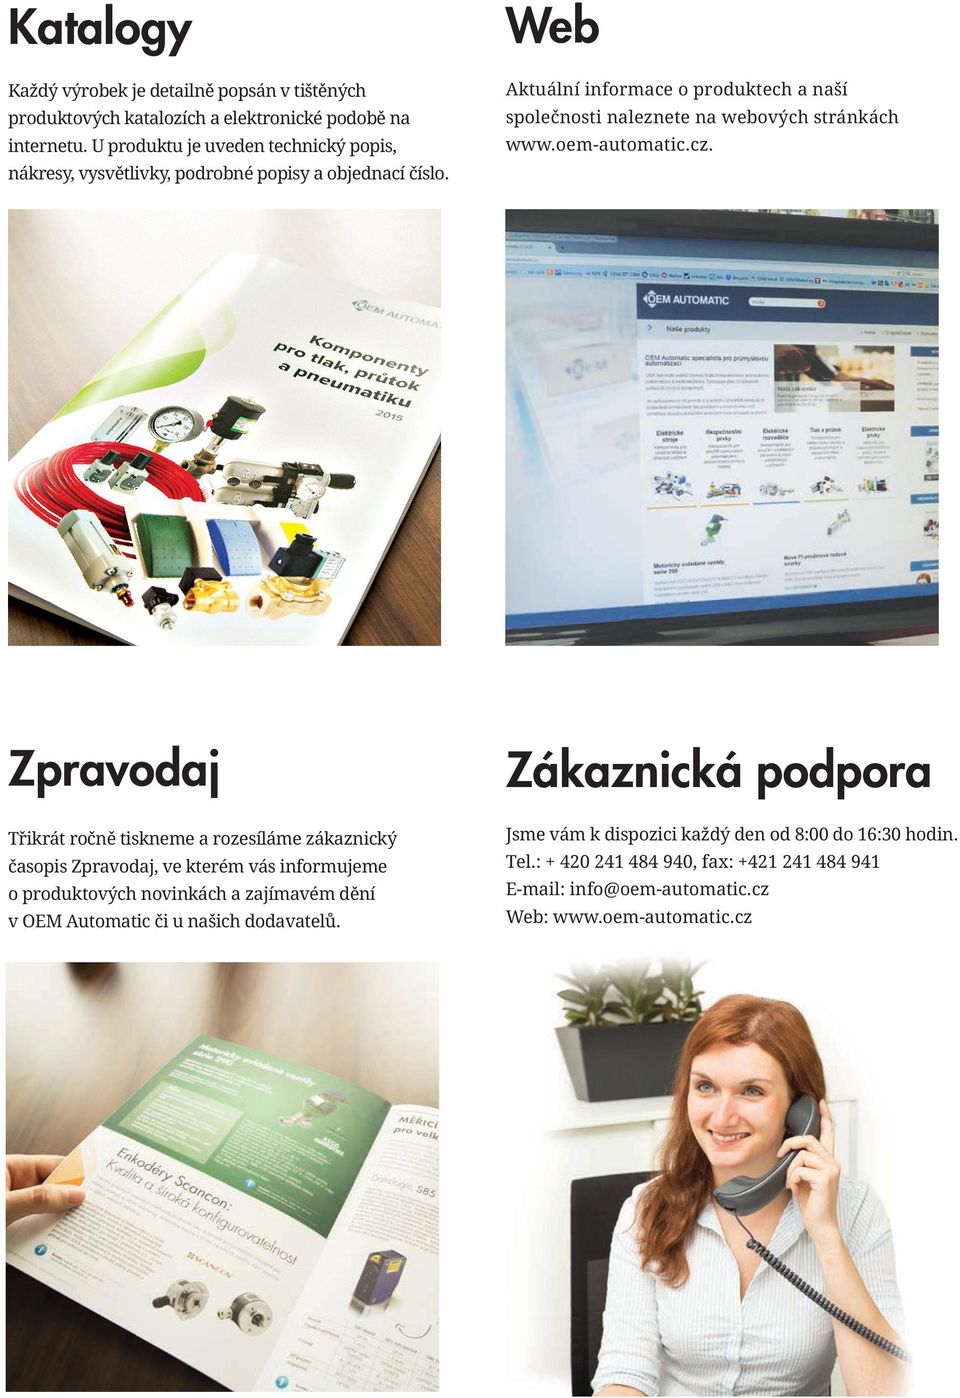 Web Aktuální informace o produktech a naší společnosti naleznete na webových stránkách www.oem-automatic.cz.